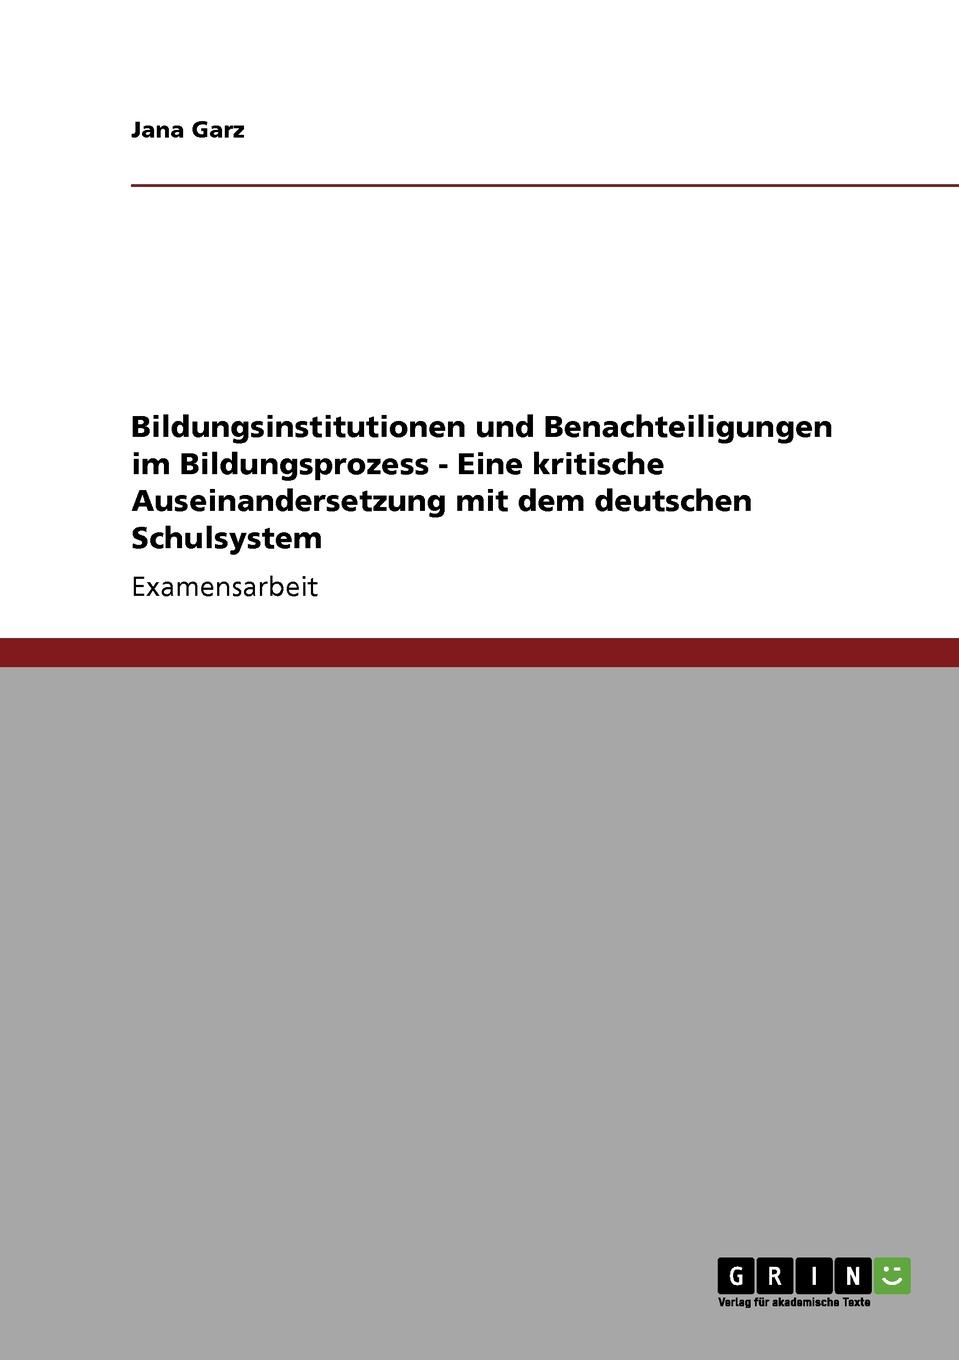 Bildungsinstitutionen und Benachteiligungen im Bildungsprozess - Eine kritische Auseinandersetzung mit dem deutschen Schulsystem